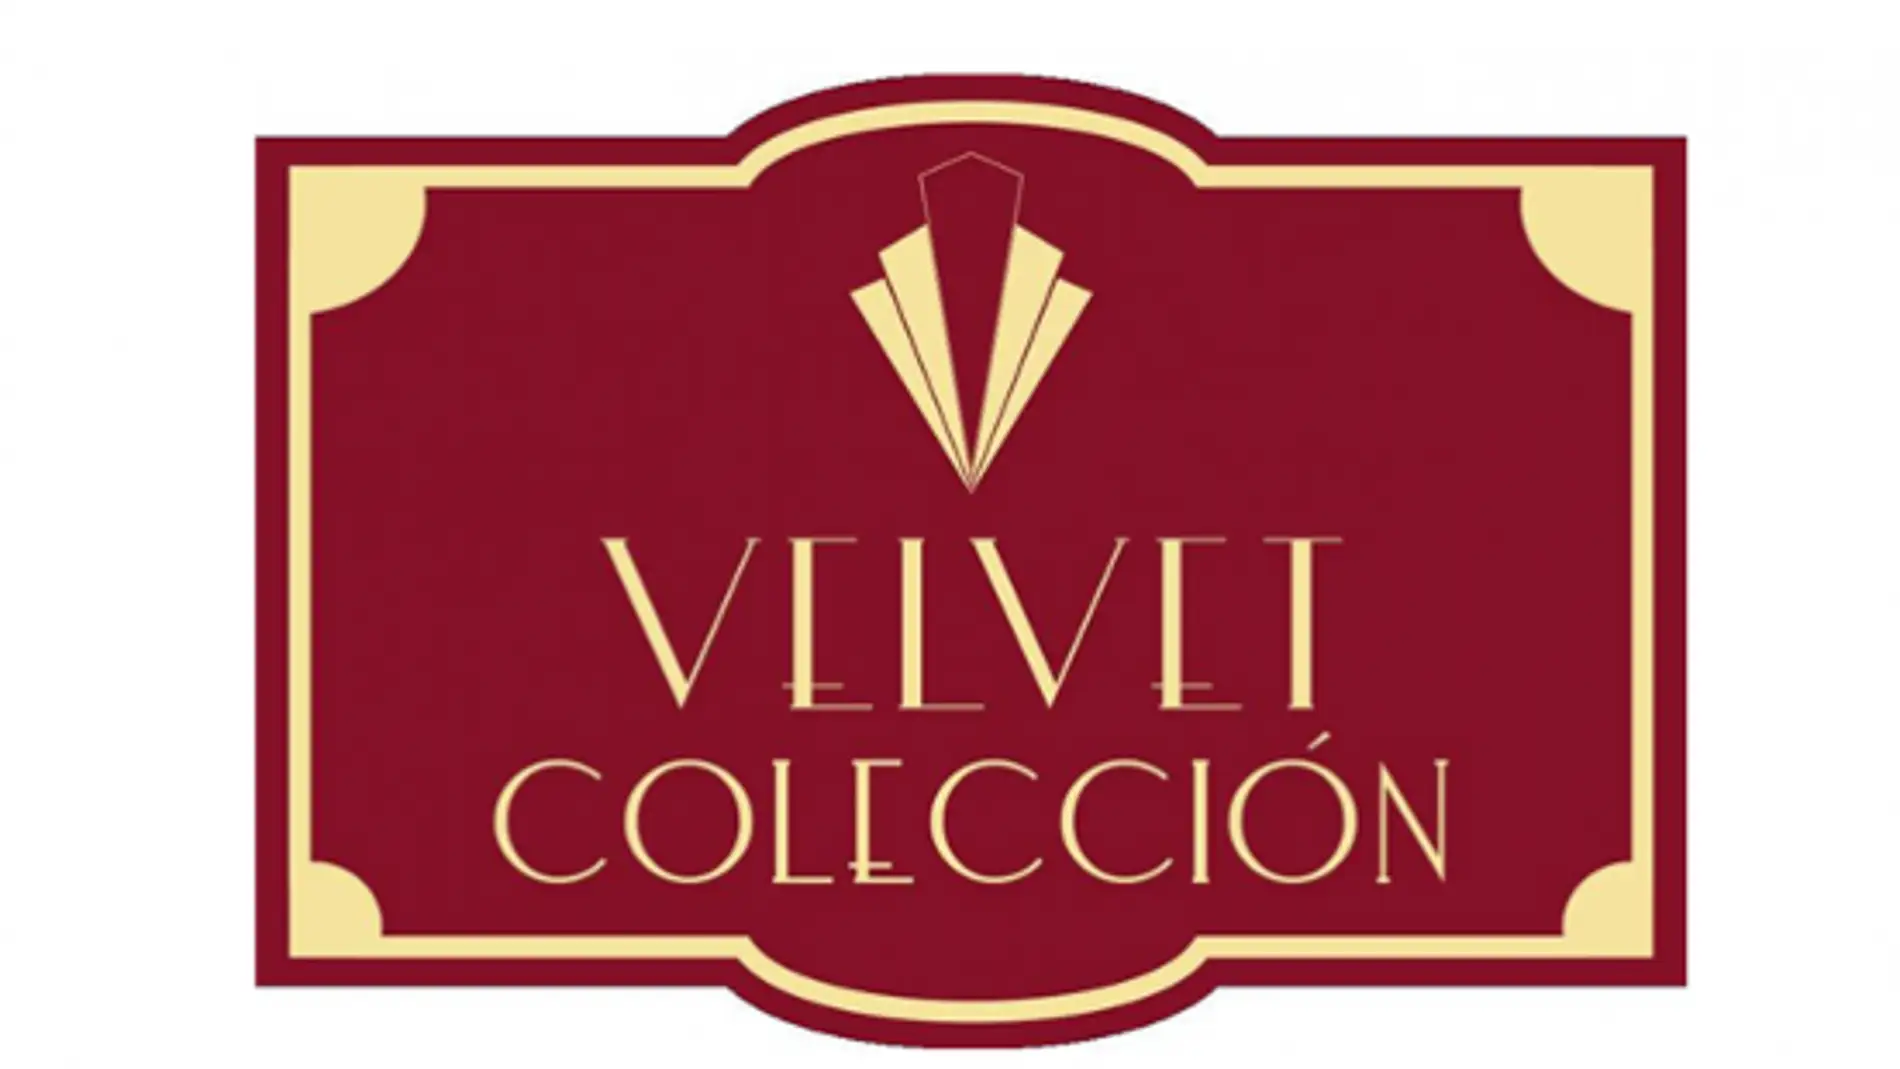 Velvet Colección